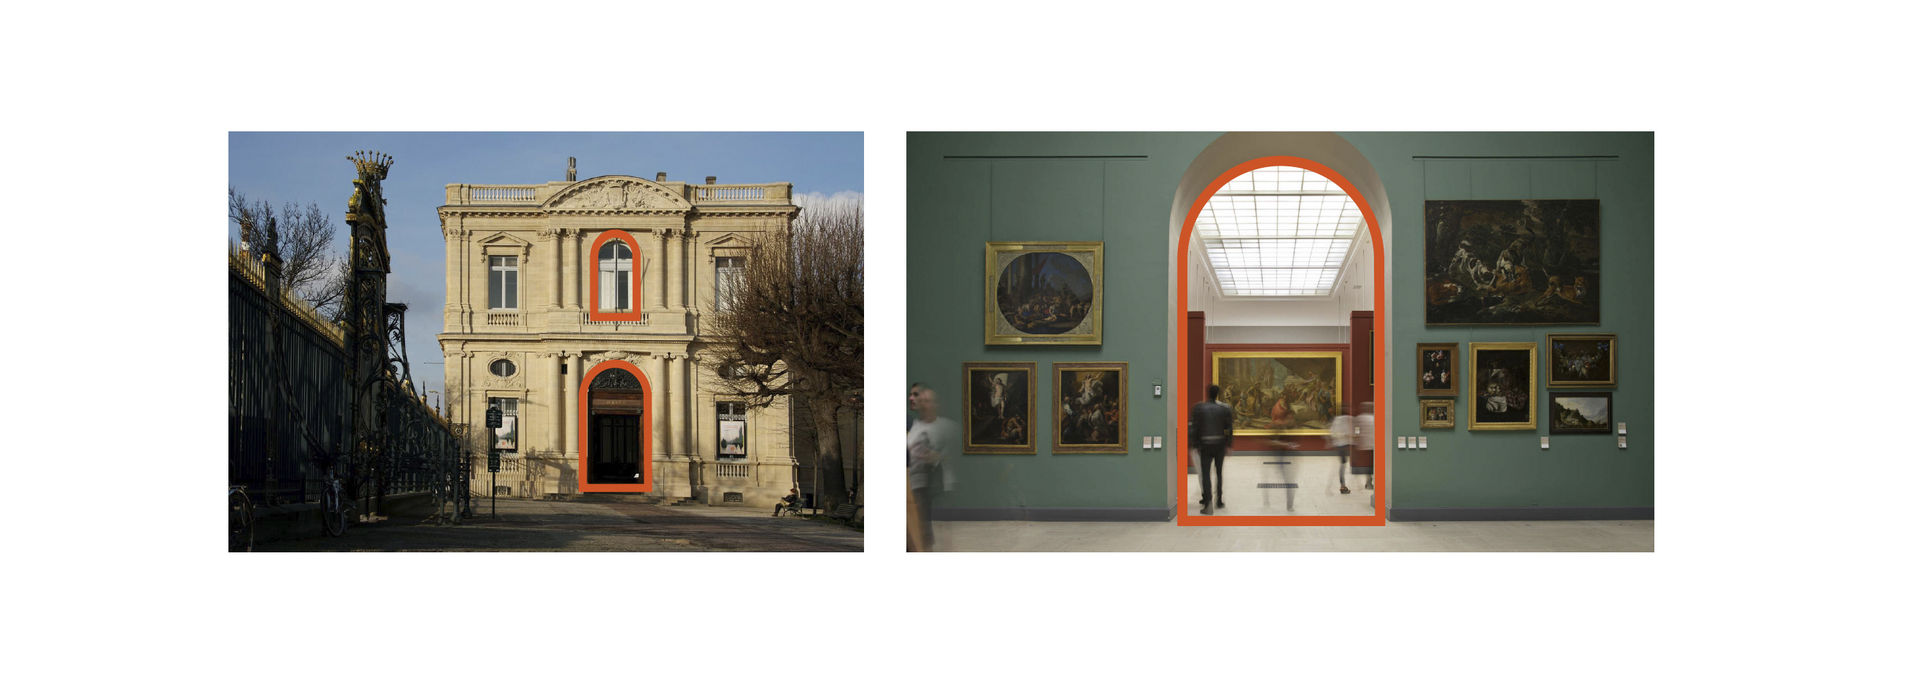 Identité graphique et visuelle pour le Musée des Beaux Arts de Bordeaux (photo 2)